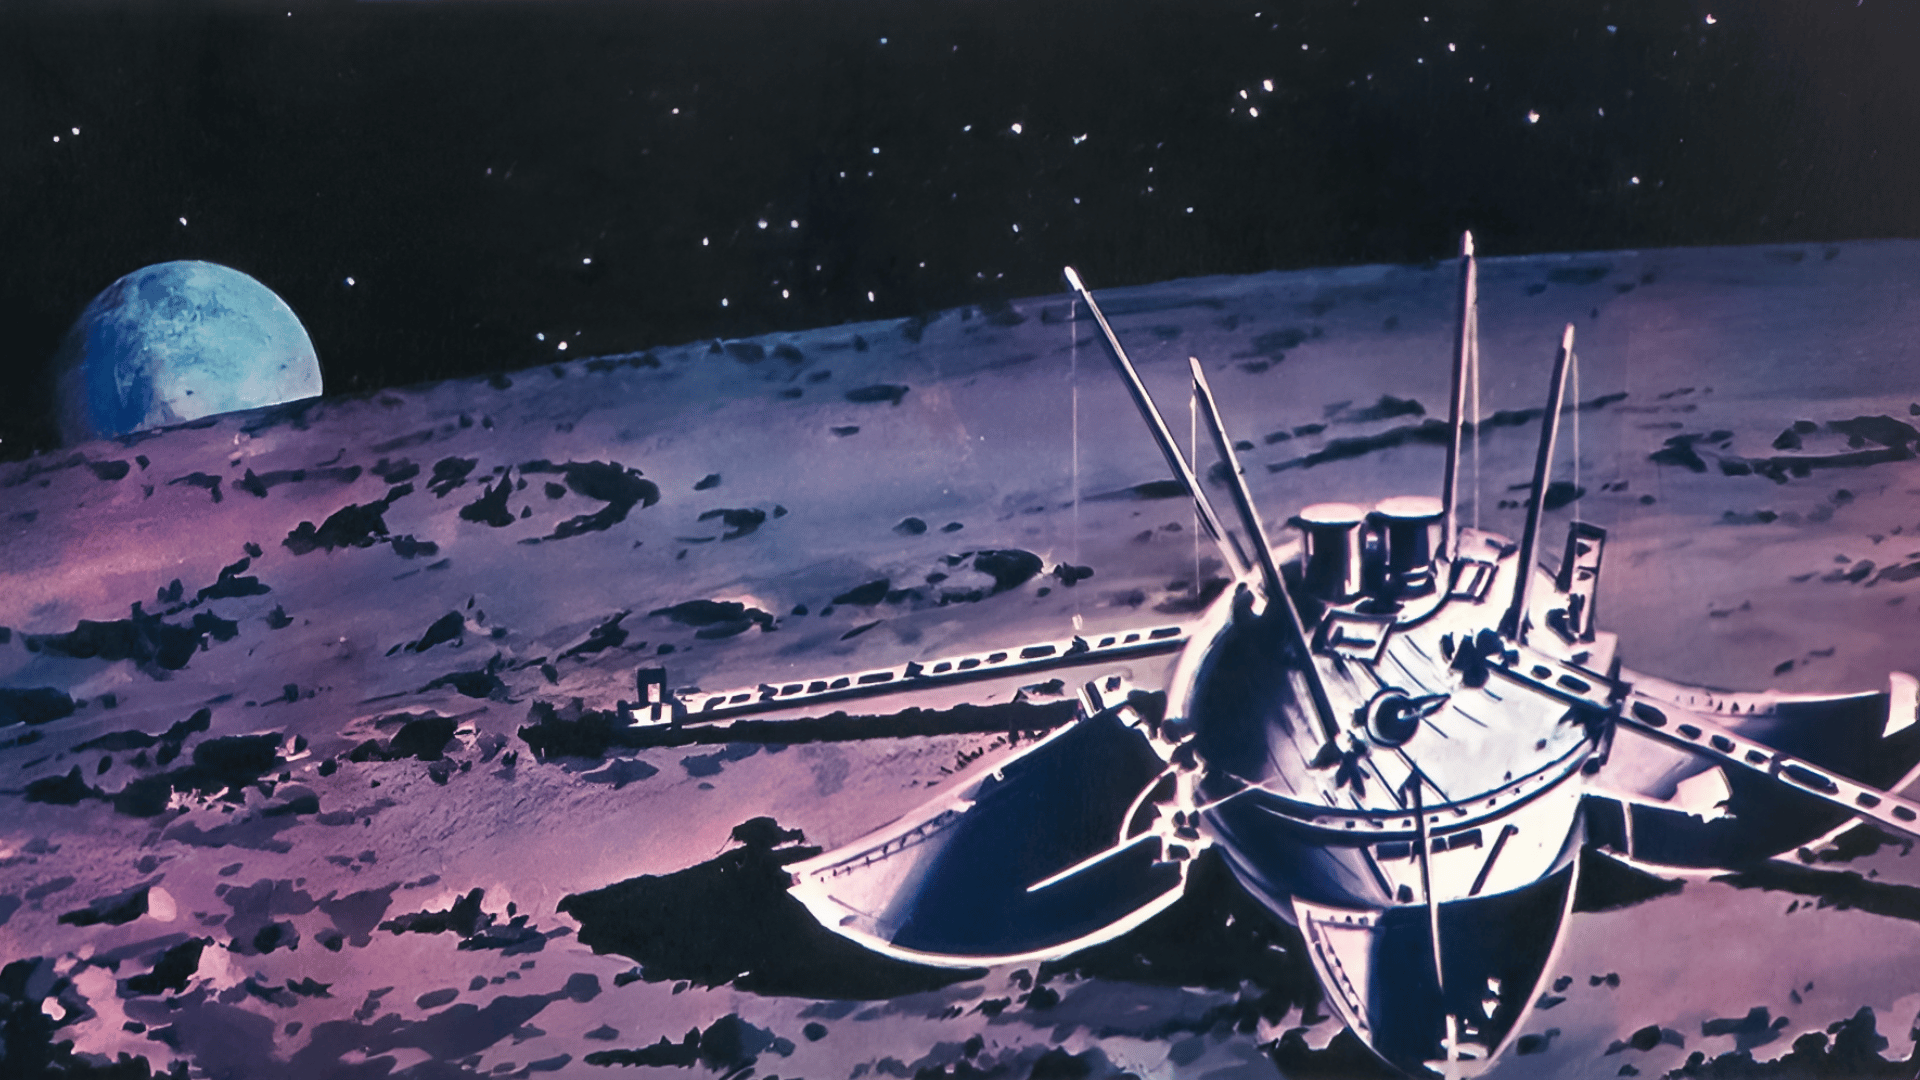 Корабль луна 3. Луна-9 автоматическая межпланетная станция. Советская АМС «Луна - 9». 1966 — СССР осуществил успешный запуск межпланетной станции «Луна-13».. Станция Луна-9 1966 года.